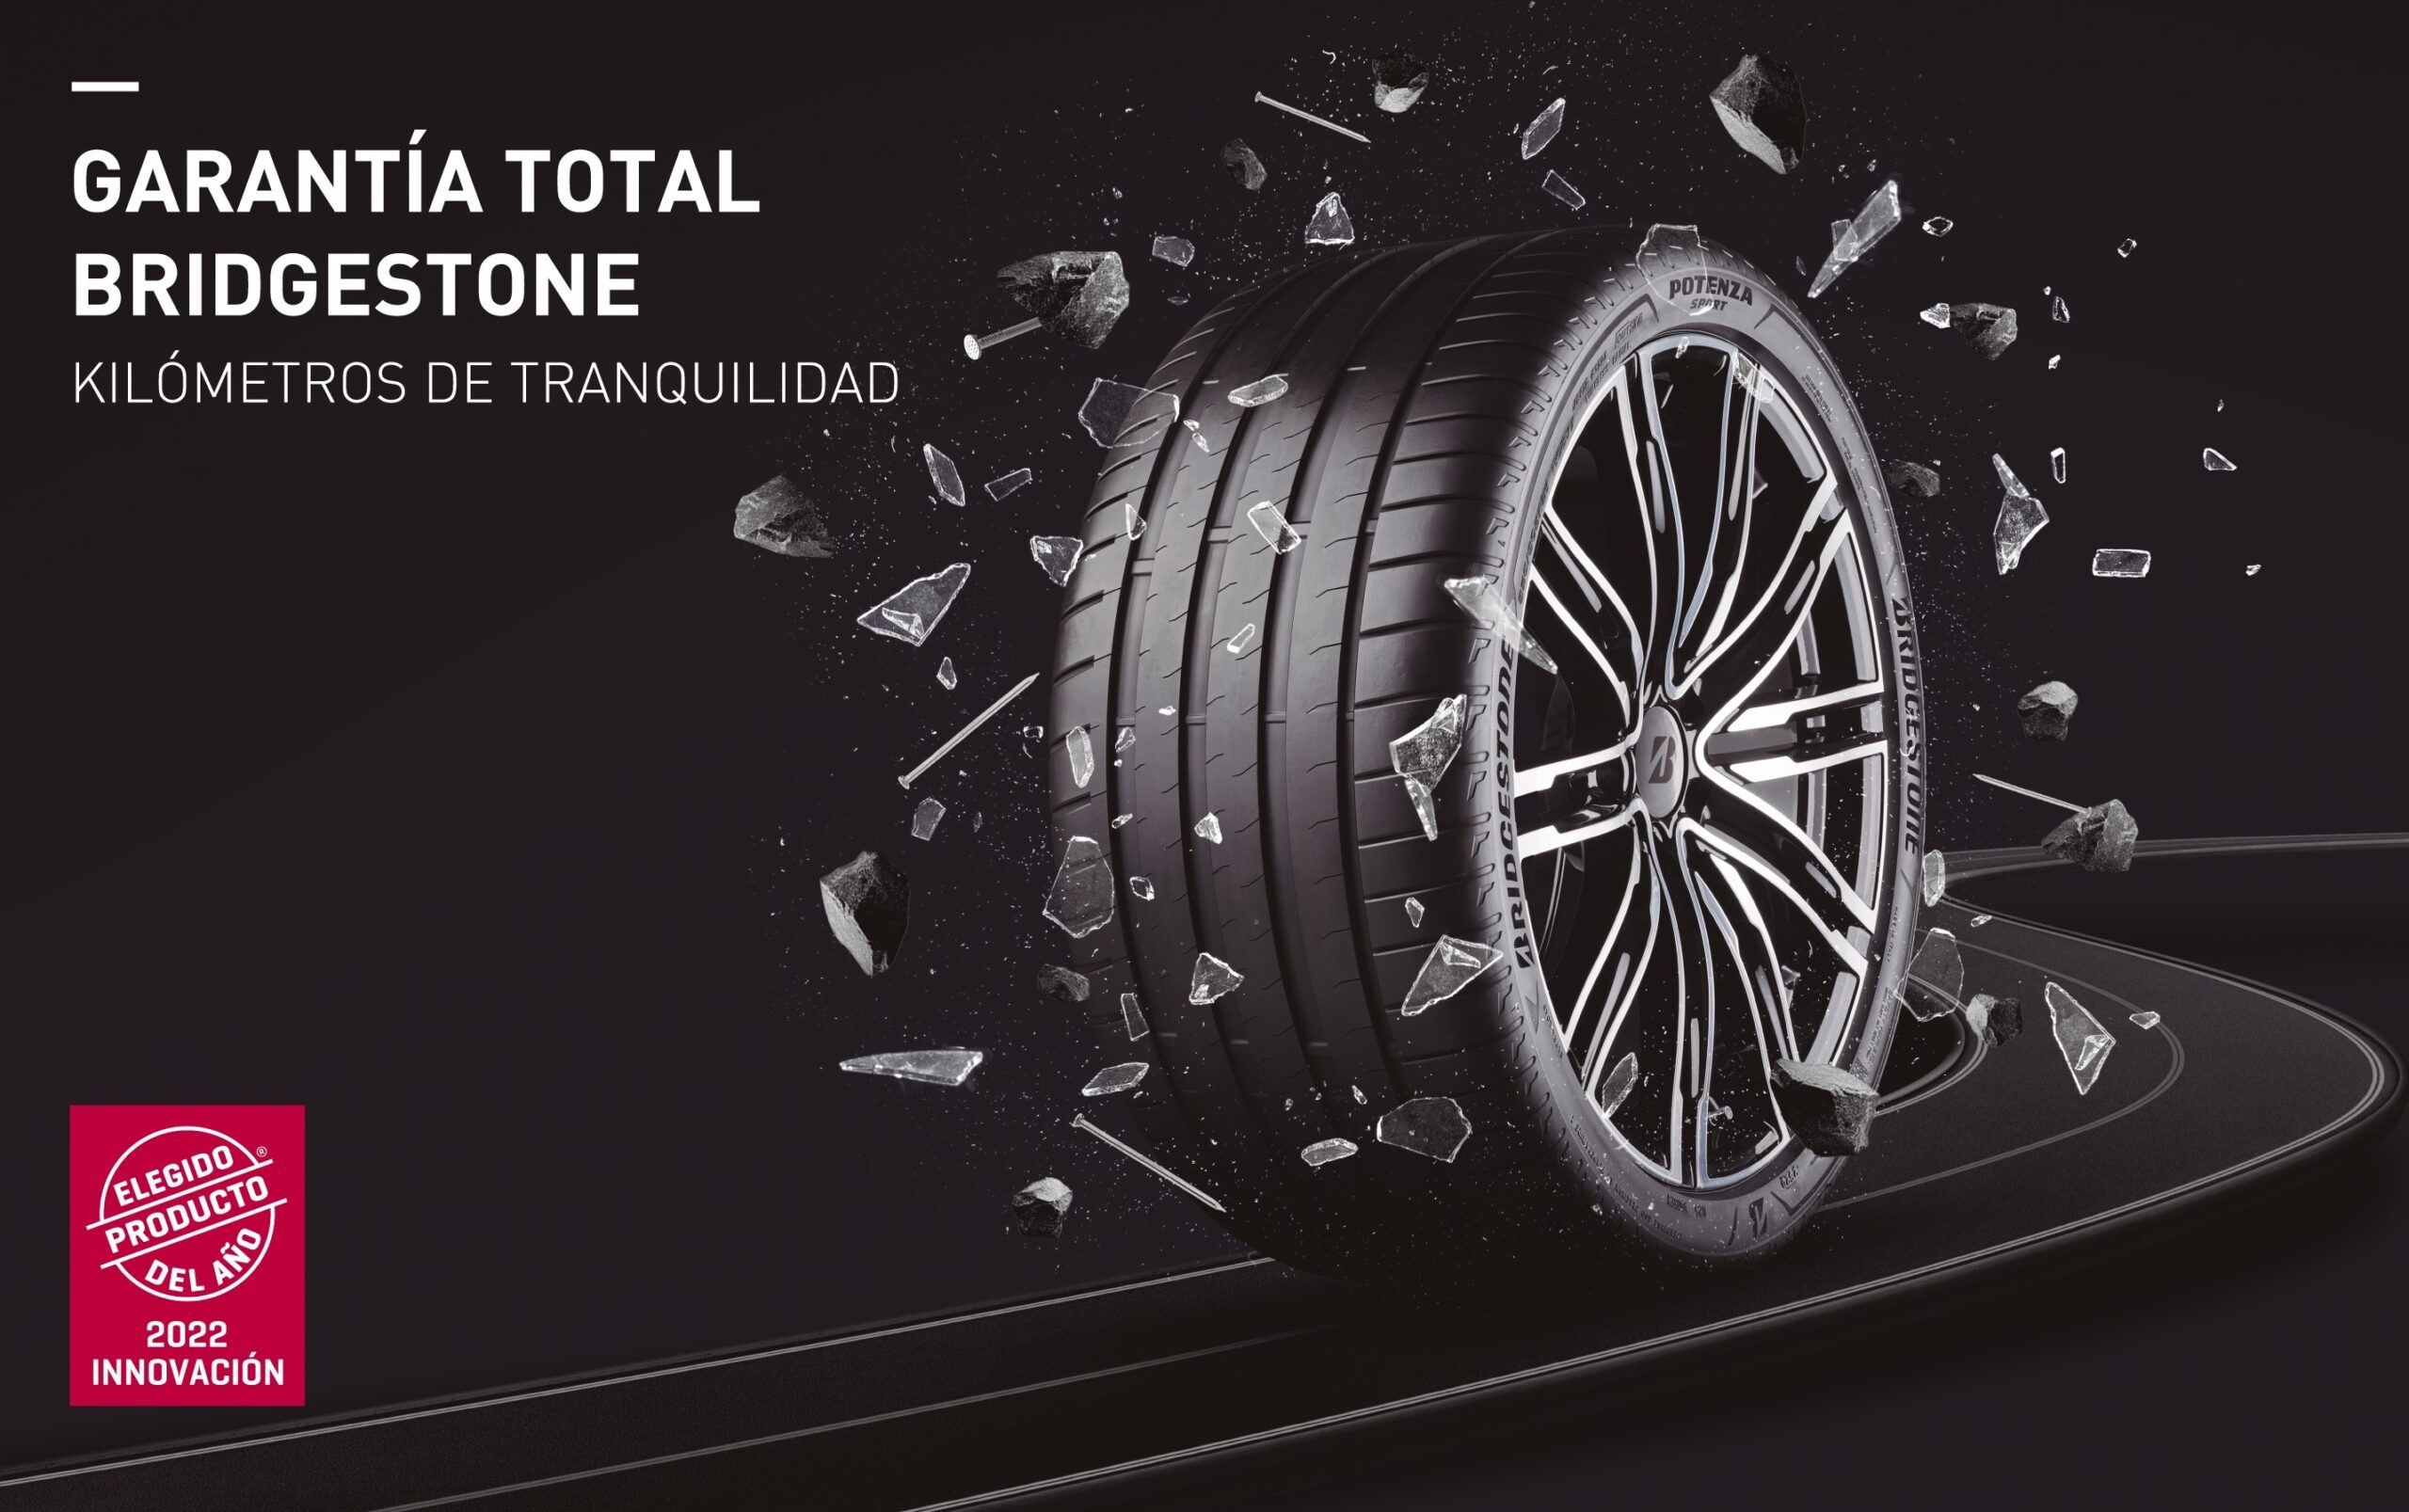 Bridgestone Garantía Total elegido como Producto del Año 2022 por los consumidores